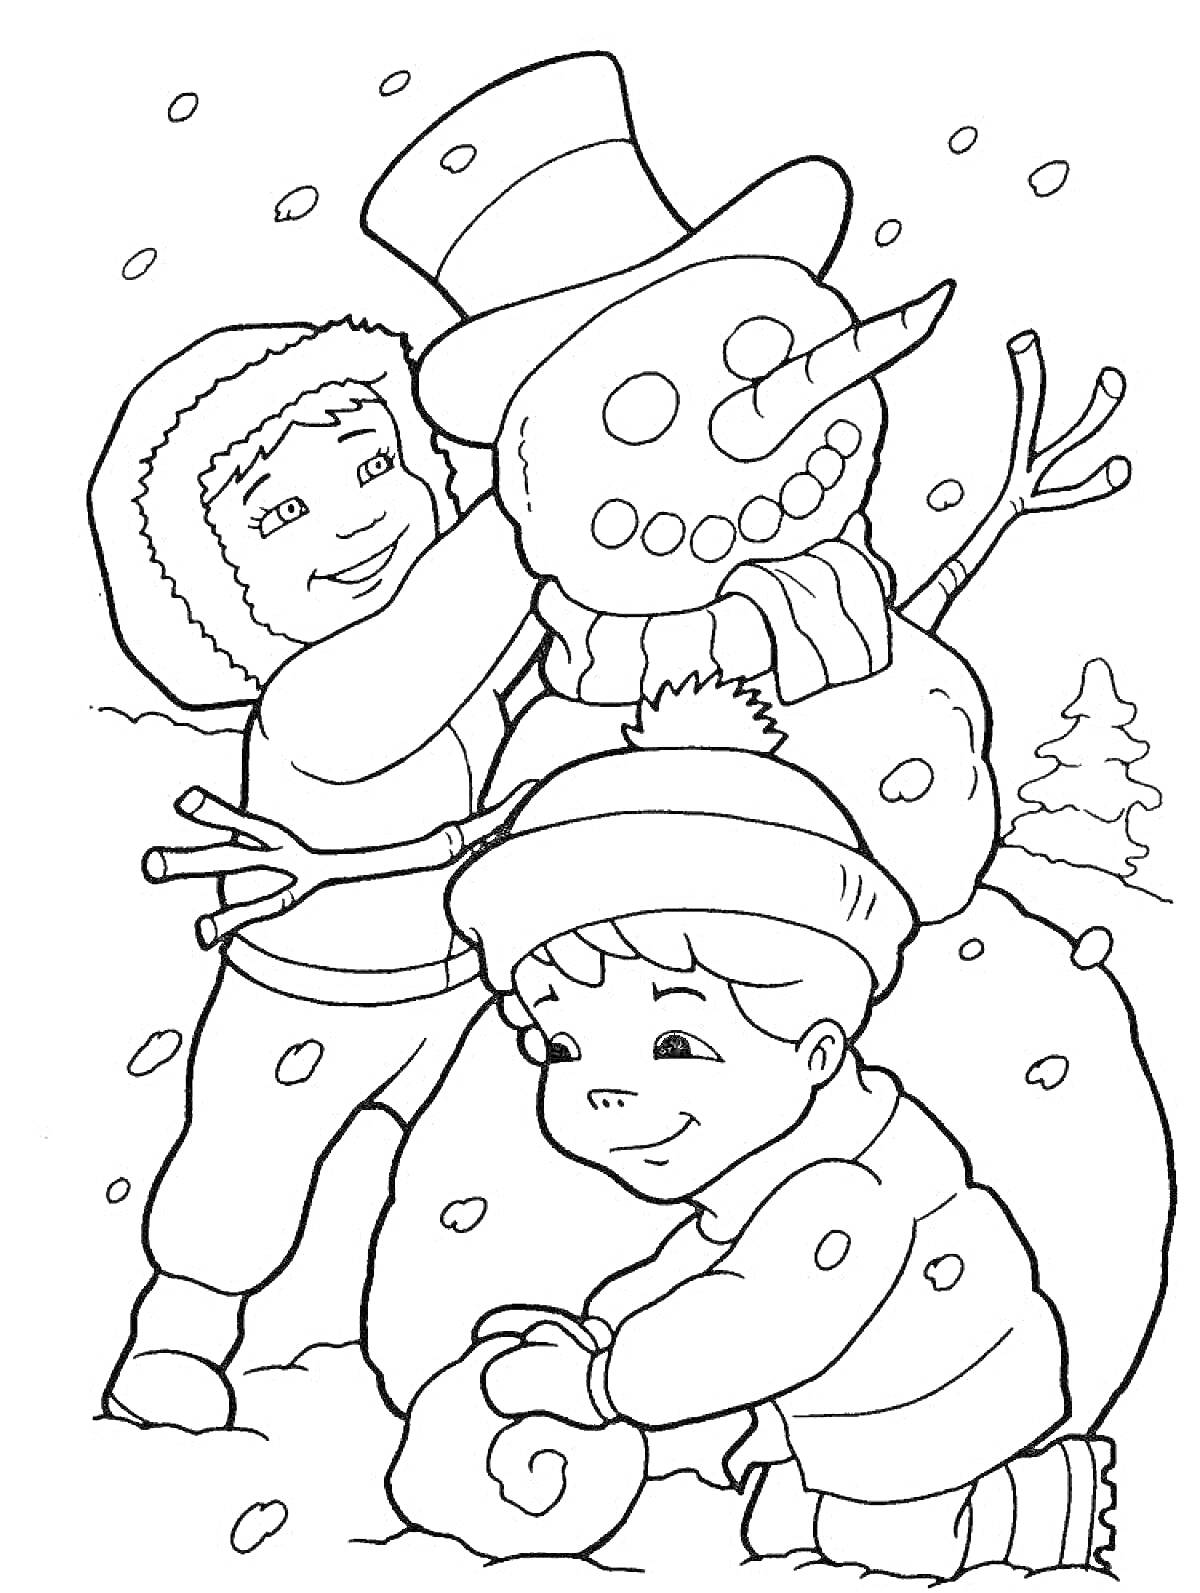 Раскраска Дети лепят снеговика и играют в снежки на зимней улице